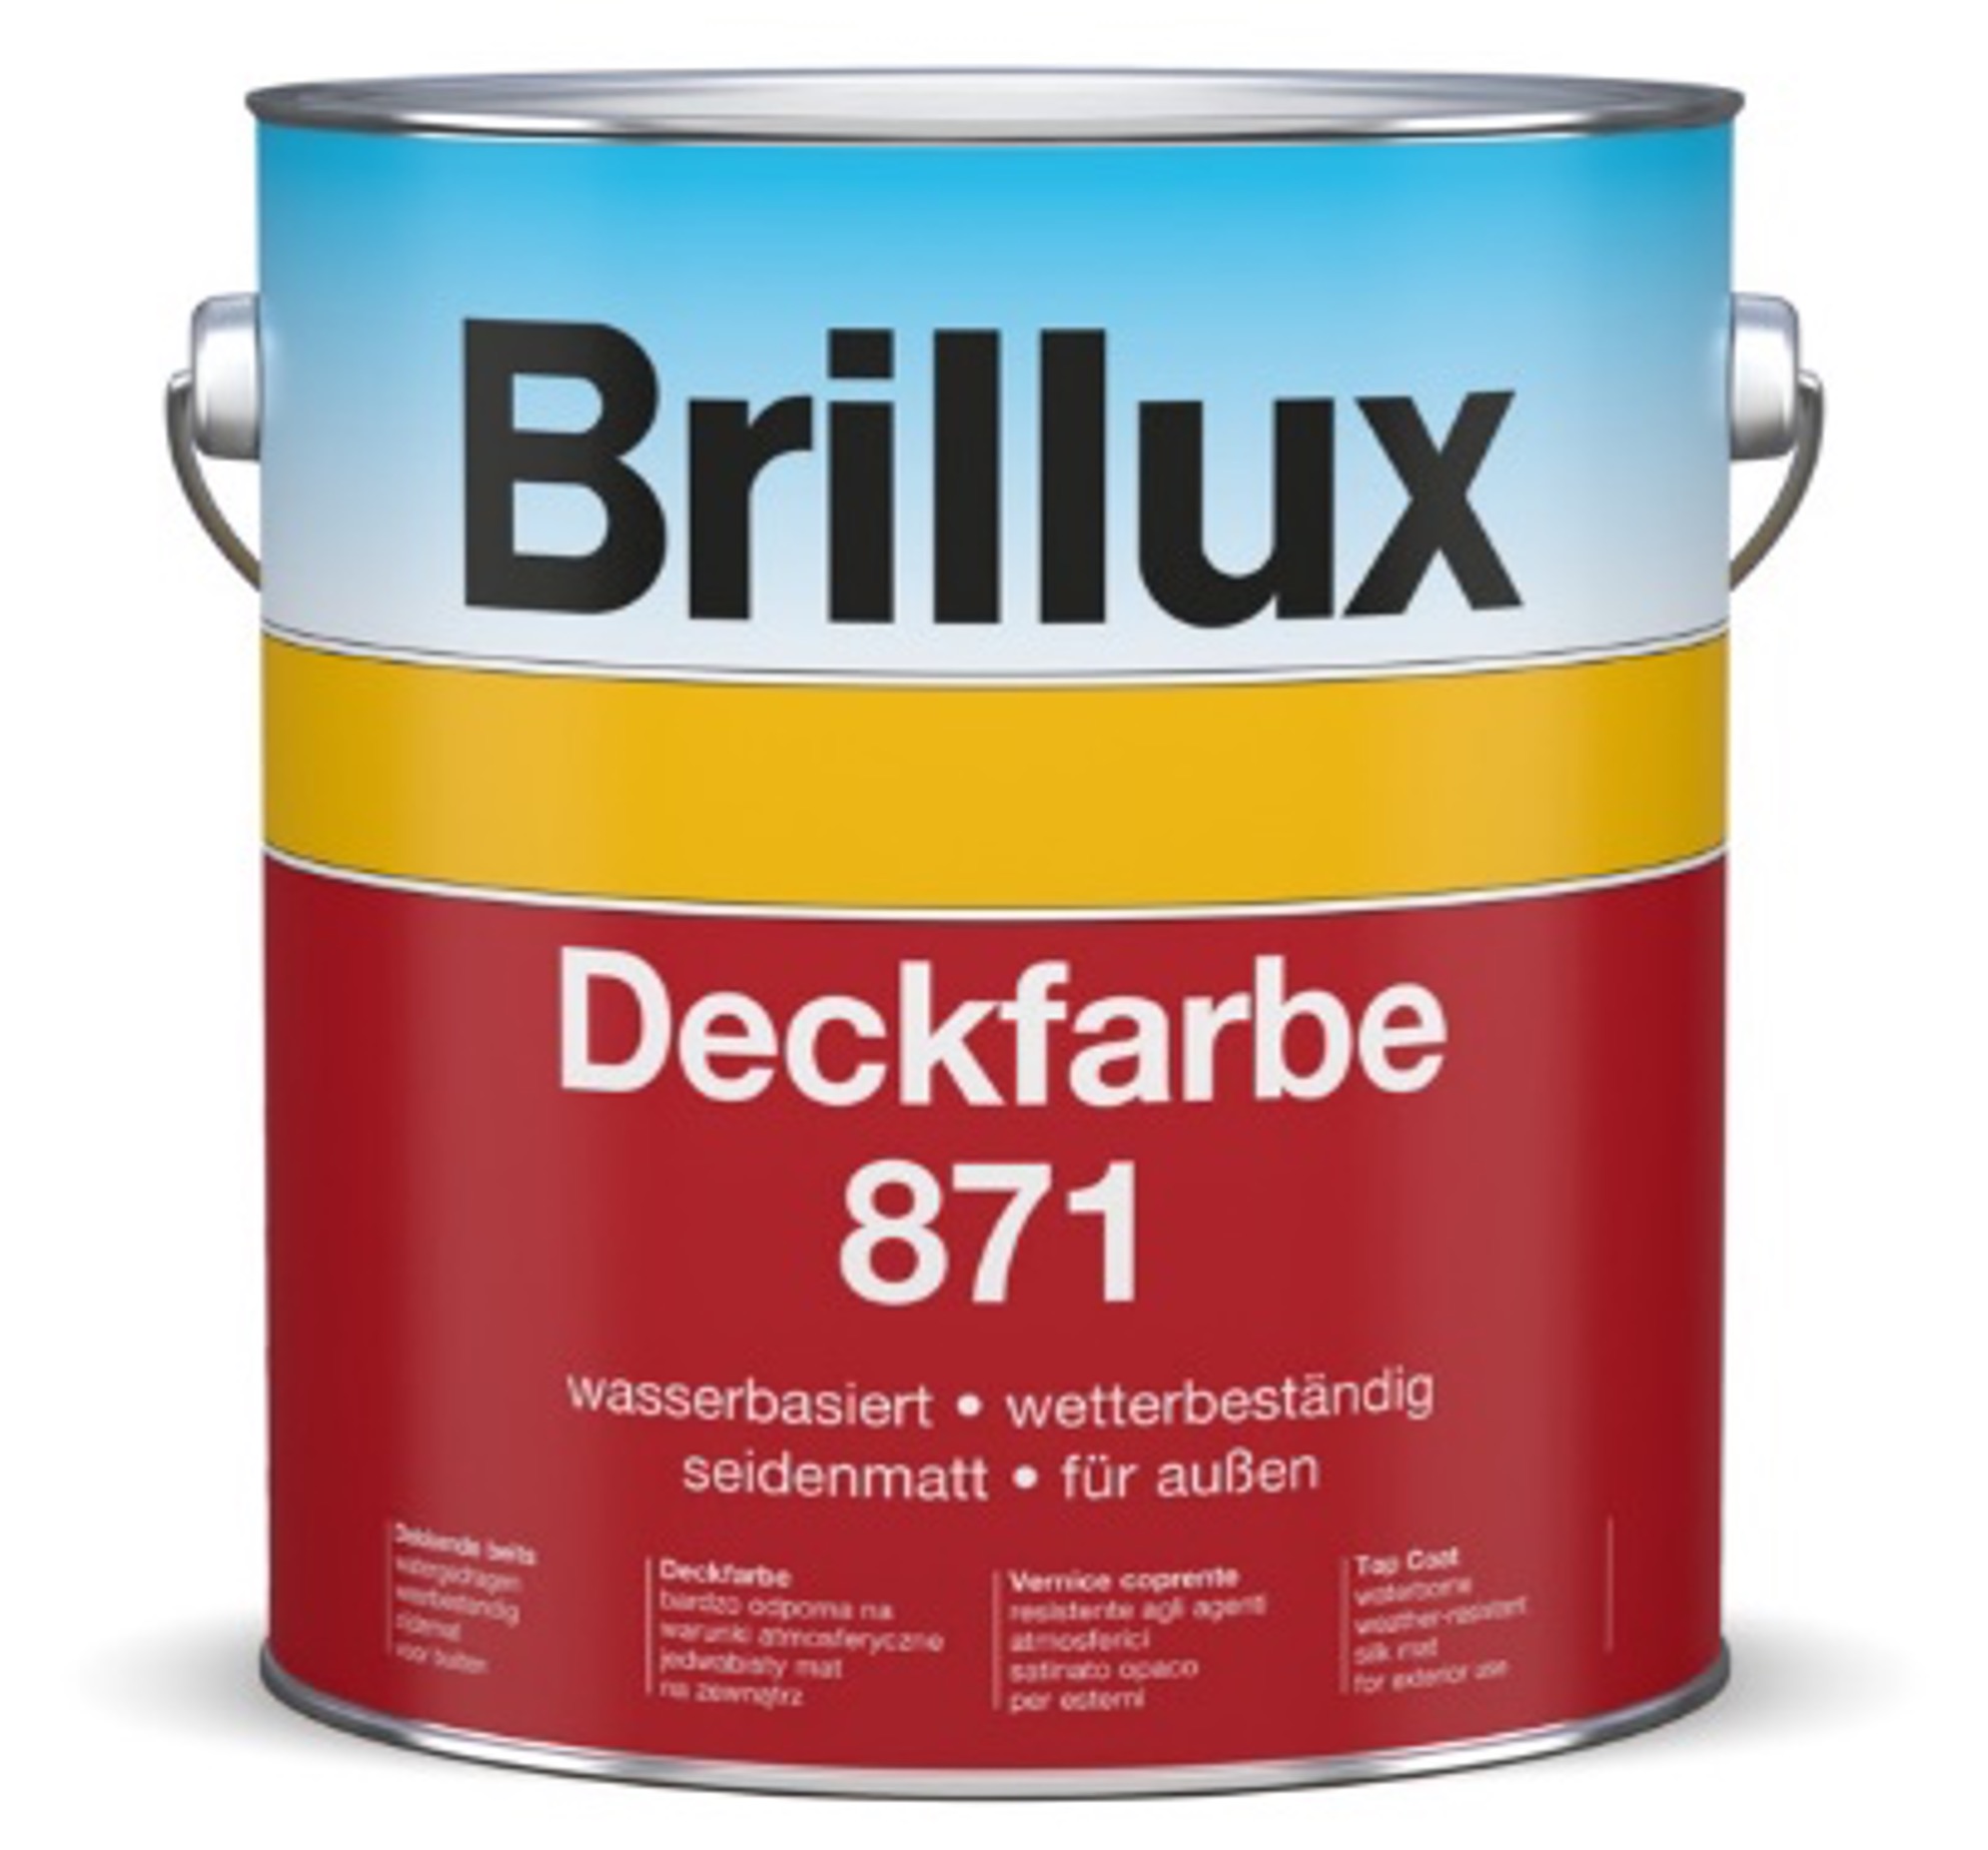 Brillux Deckfarbe 871 Optimaler Schutz und dekorative Gestaltung Image